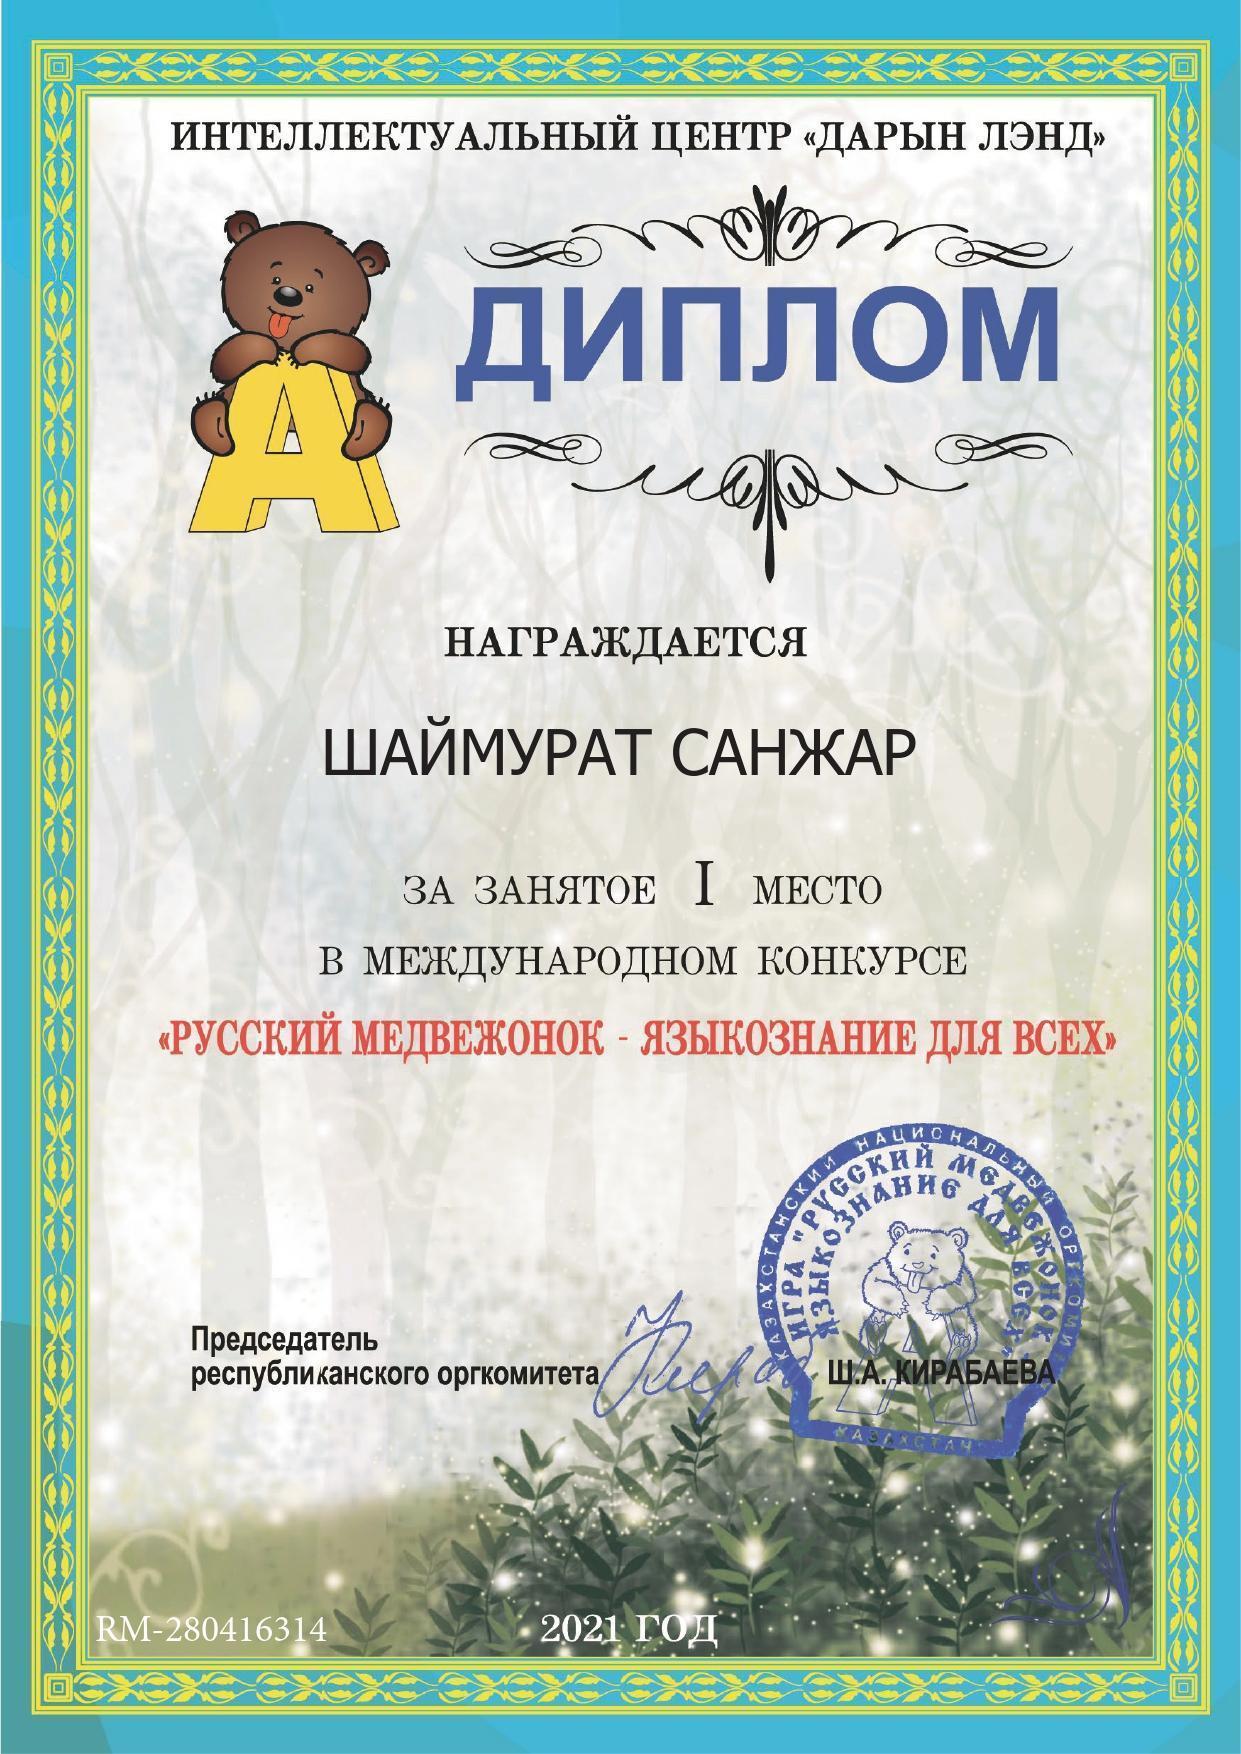 Ученик 2 "Б" класса Шаймурат Санжар  занял І место в международном конкурсе "Русский медвежонок-языкознание для всех"